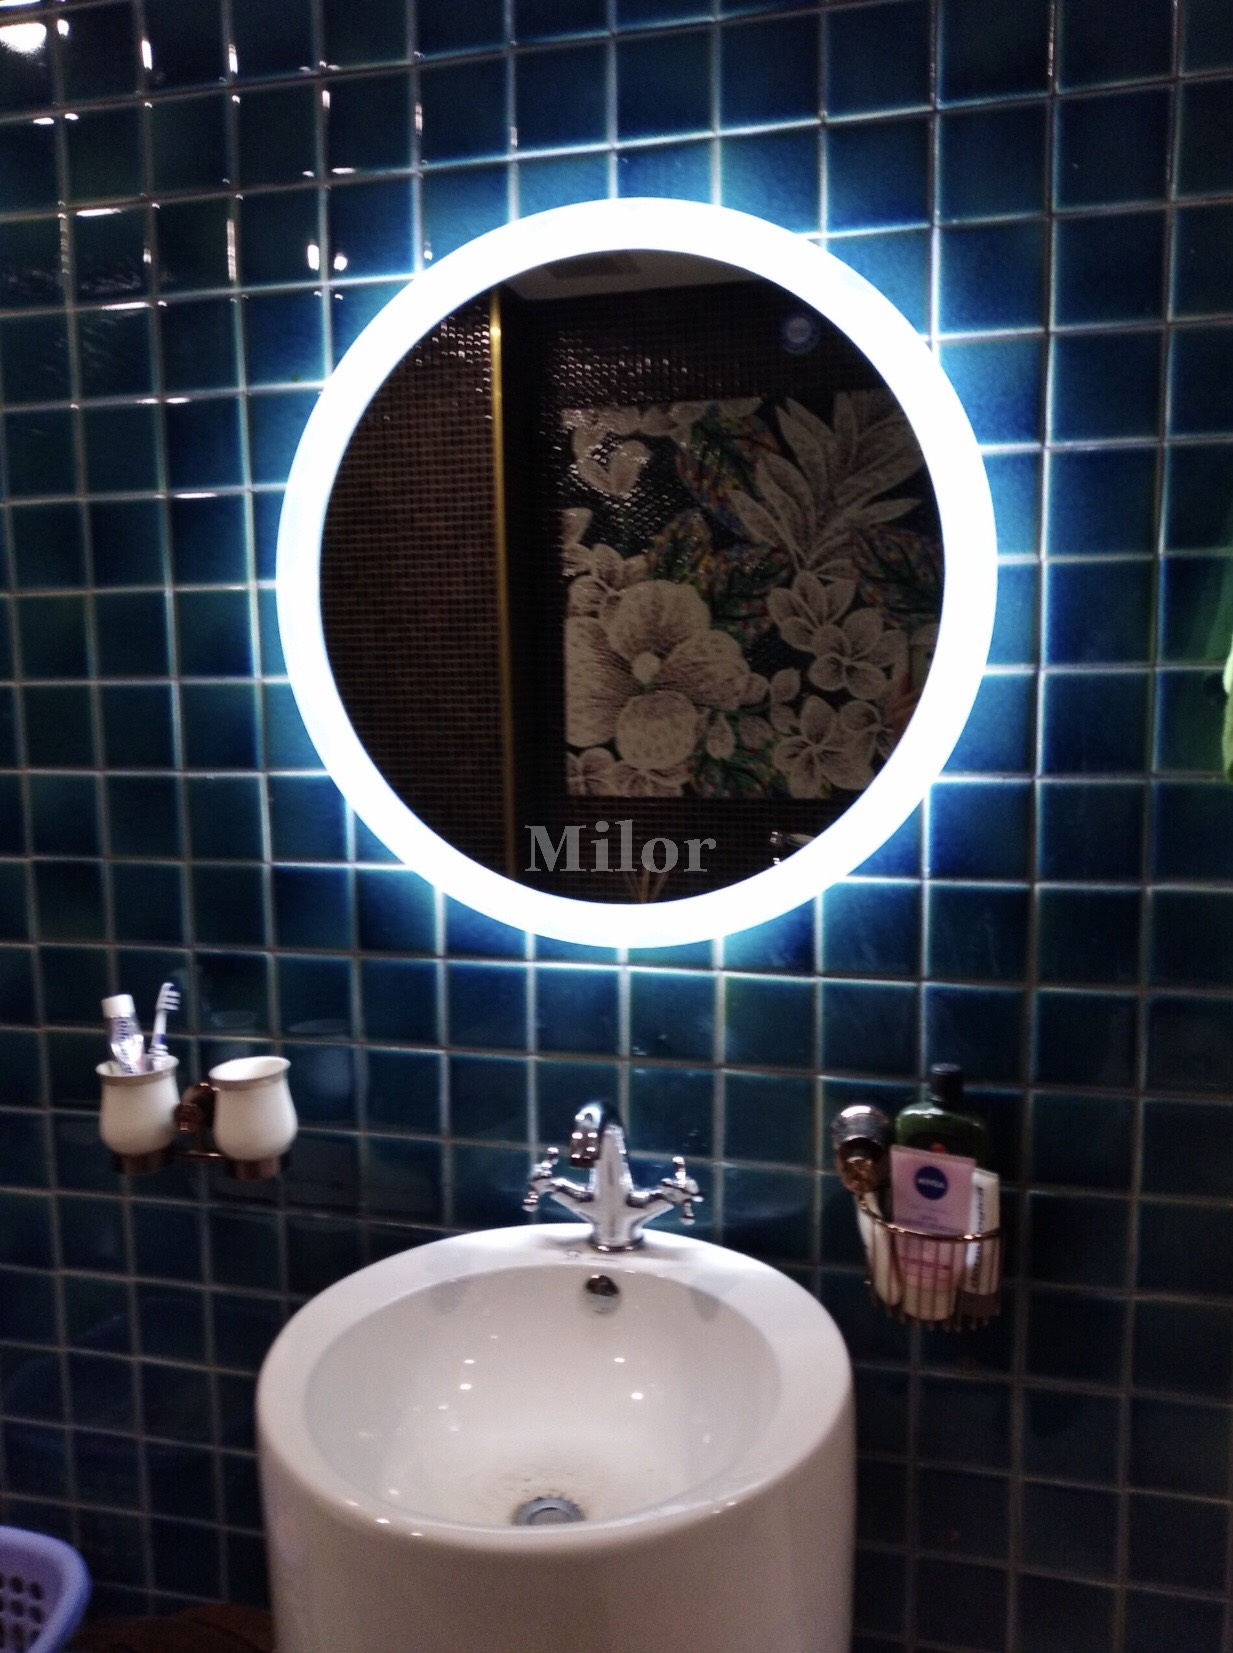 Gương phòng tắm Milor: Với ngoại hình đơn giản và tính năng tiên tiến, gương phòng tắm Milor sẽ làm cho phòng tắm của bạn trở nên sang trọng và hiện đại hơn. Với các phụ kiện và thiết kế đa dạng, bạn có thể dễ dàng tìm thấy kiểu dáng phù hợp với phong cách thiết kế của ngôi nhà của mình. Hãy khám phá sự tiện ích và độc đáo của sản phẩm này bằng cách nhấp chuột vào hình ảnh liên quan.